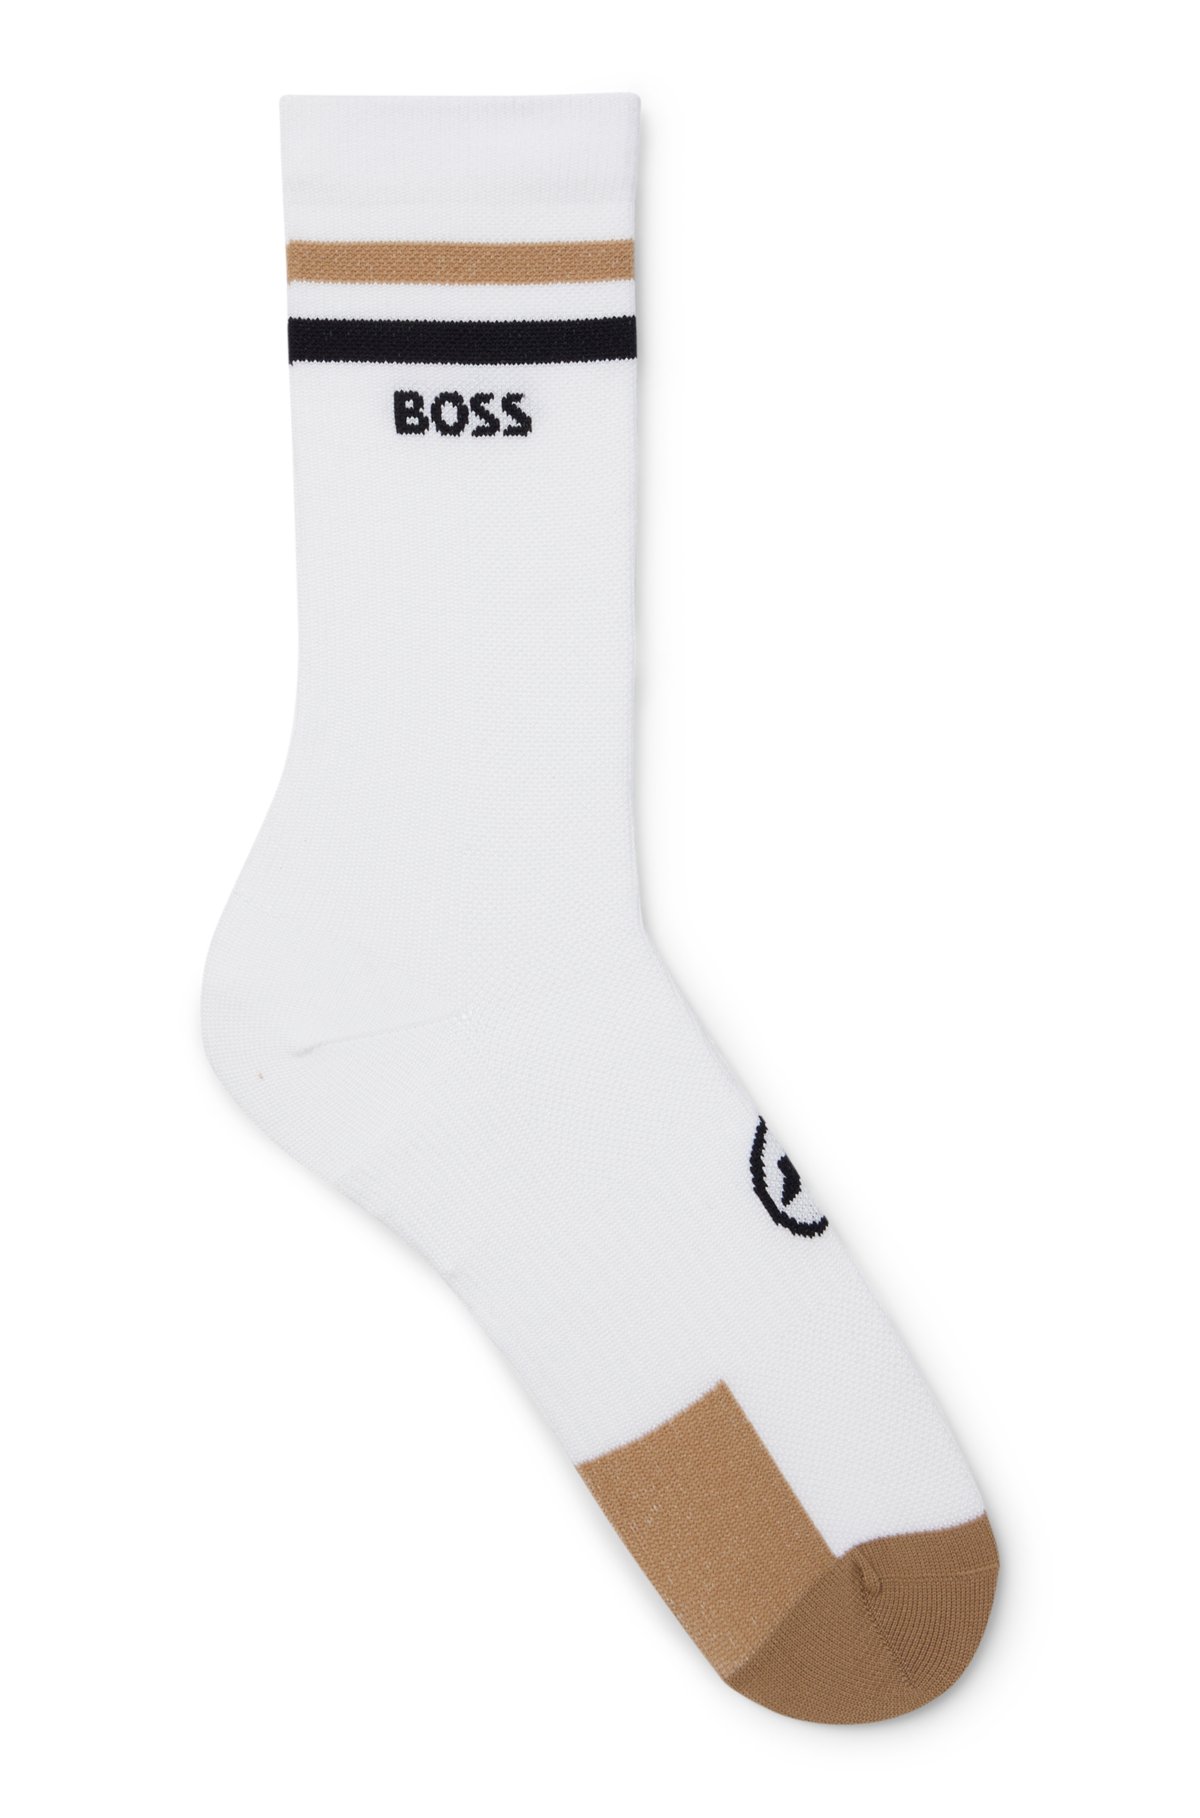 Hurtigtørrende sokker konstruktion fra BOSS x ASSOS